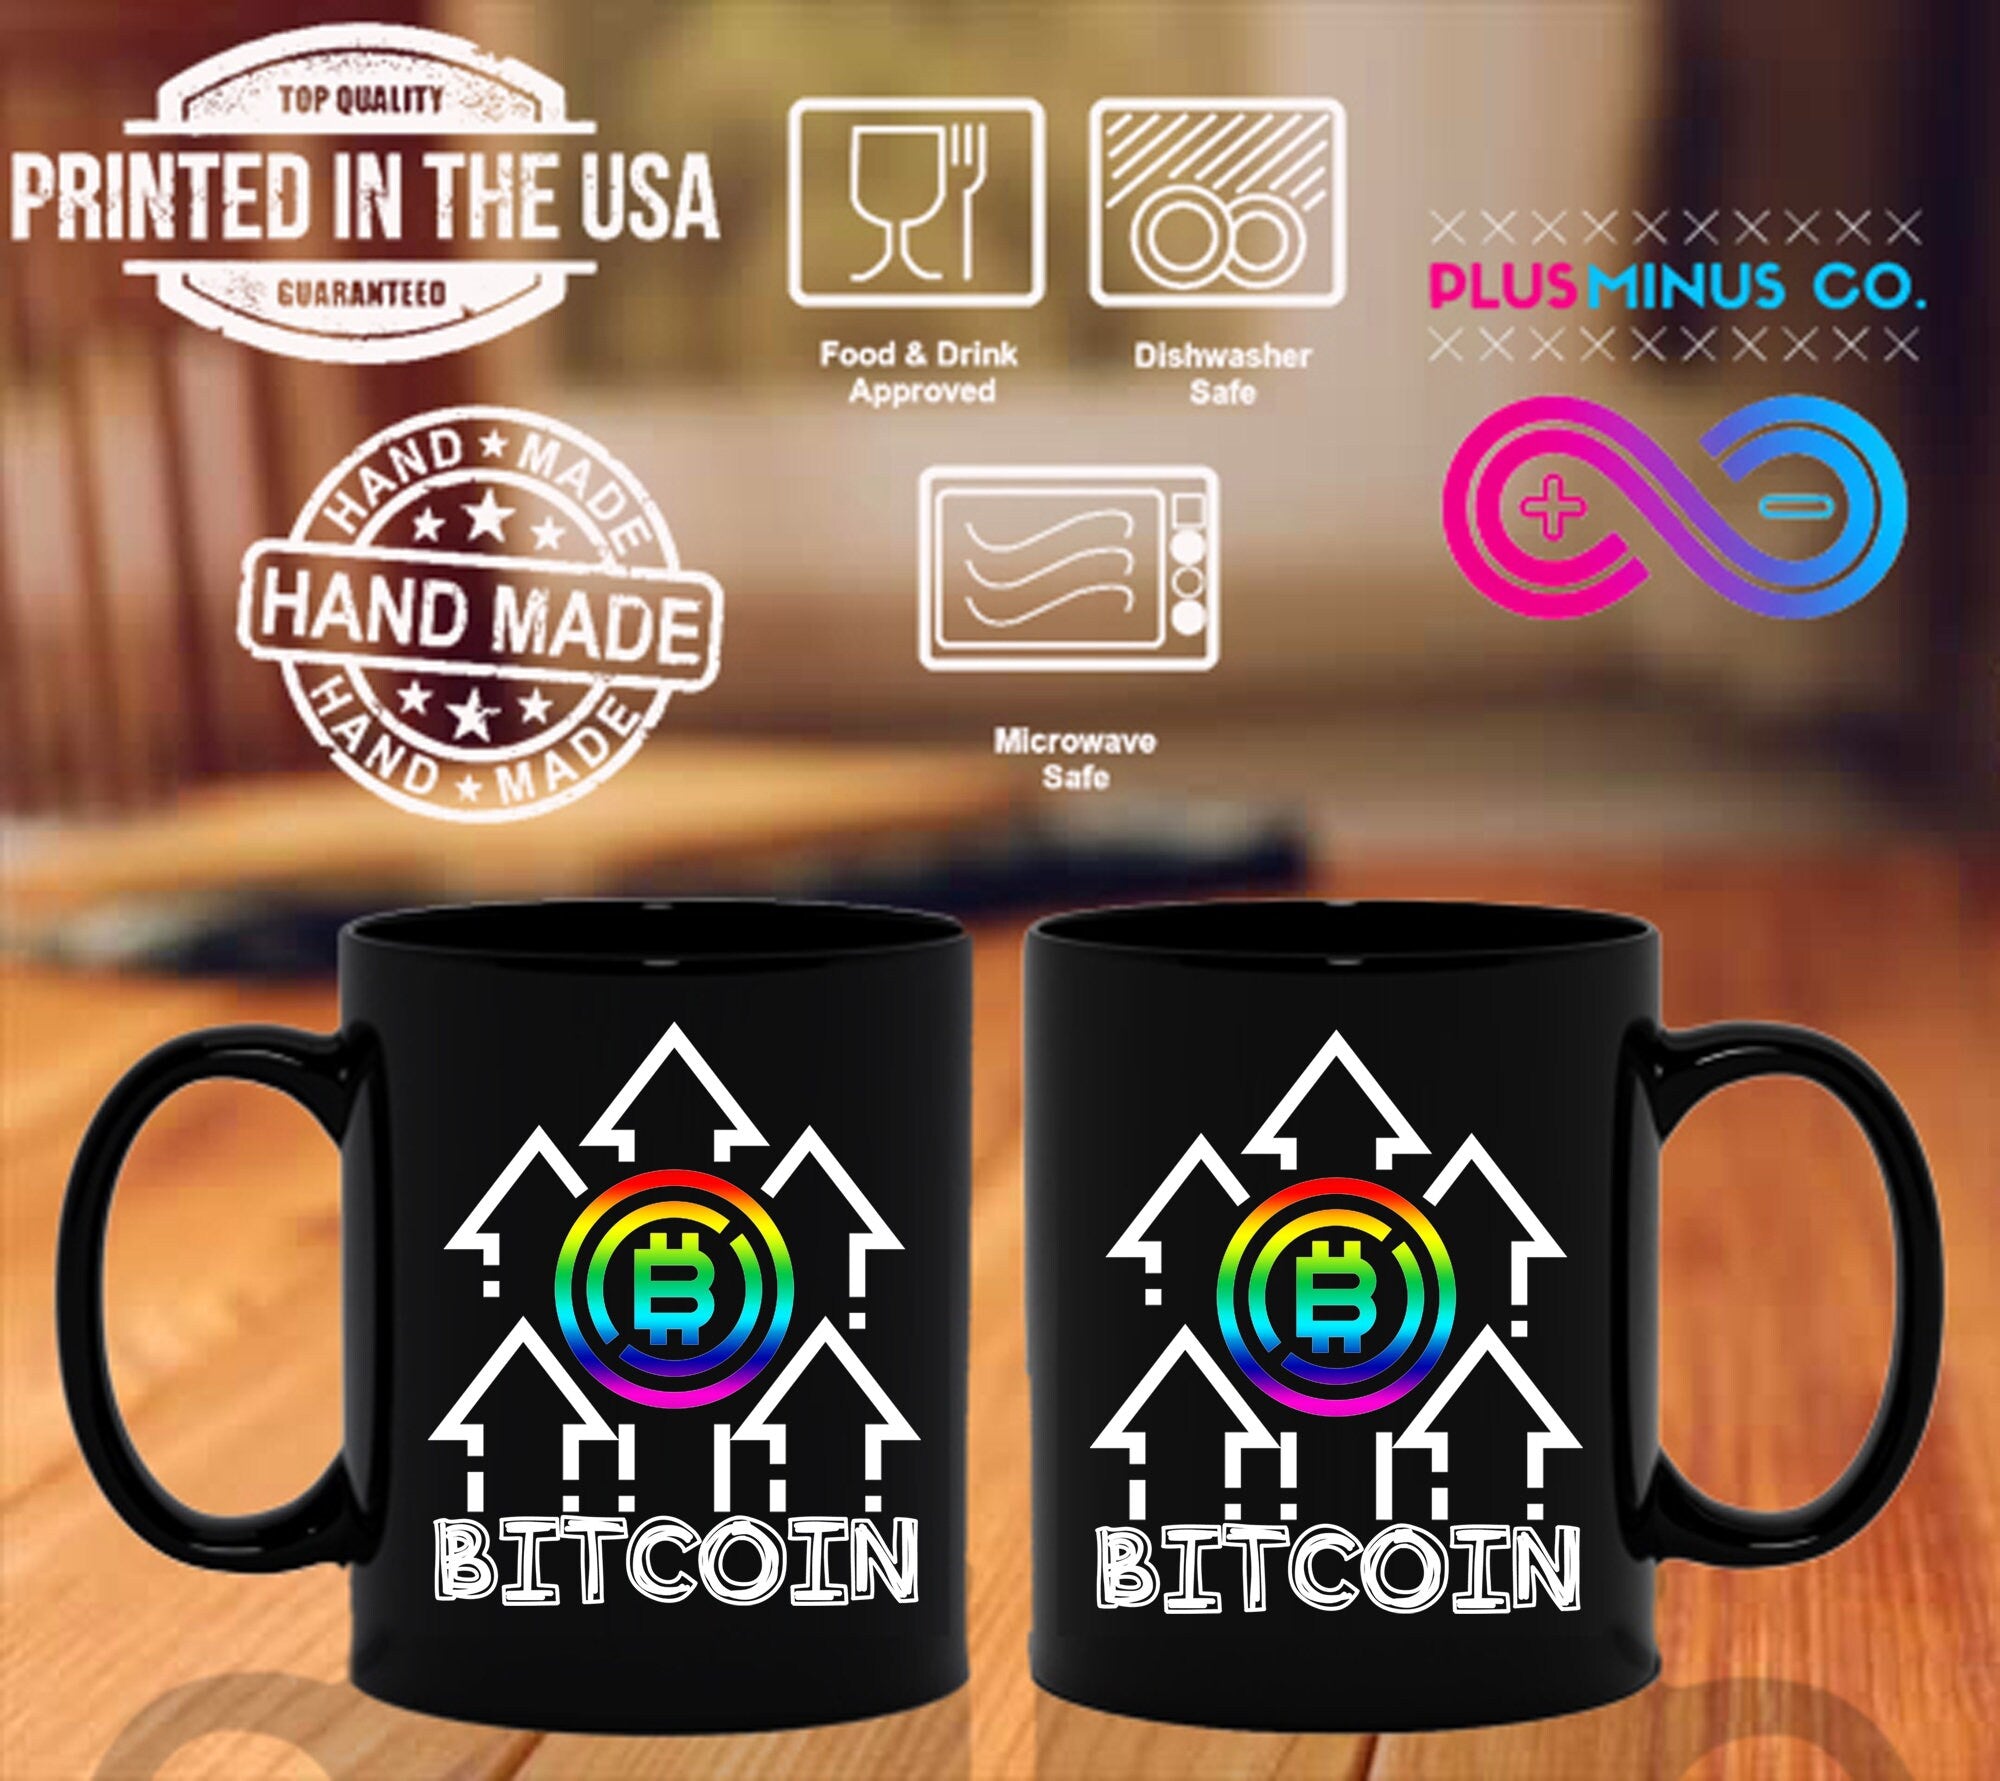 Daugiaspalviai Bitcoin juodi puodeliai - plusminusco.com